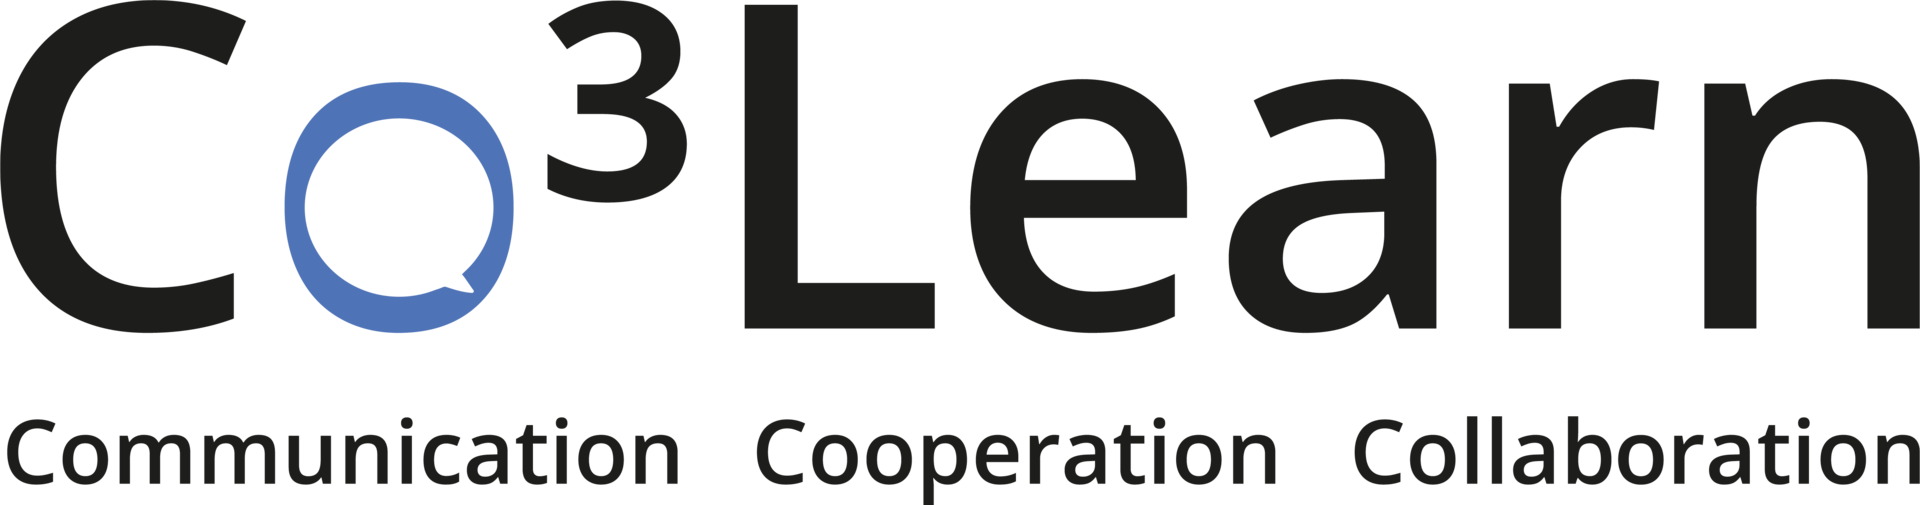 logo-co3learn-ausfuehl